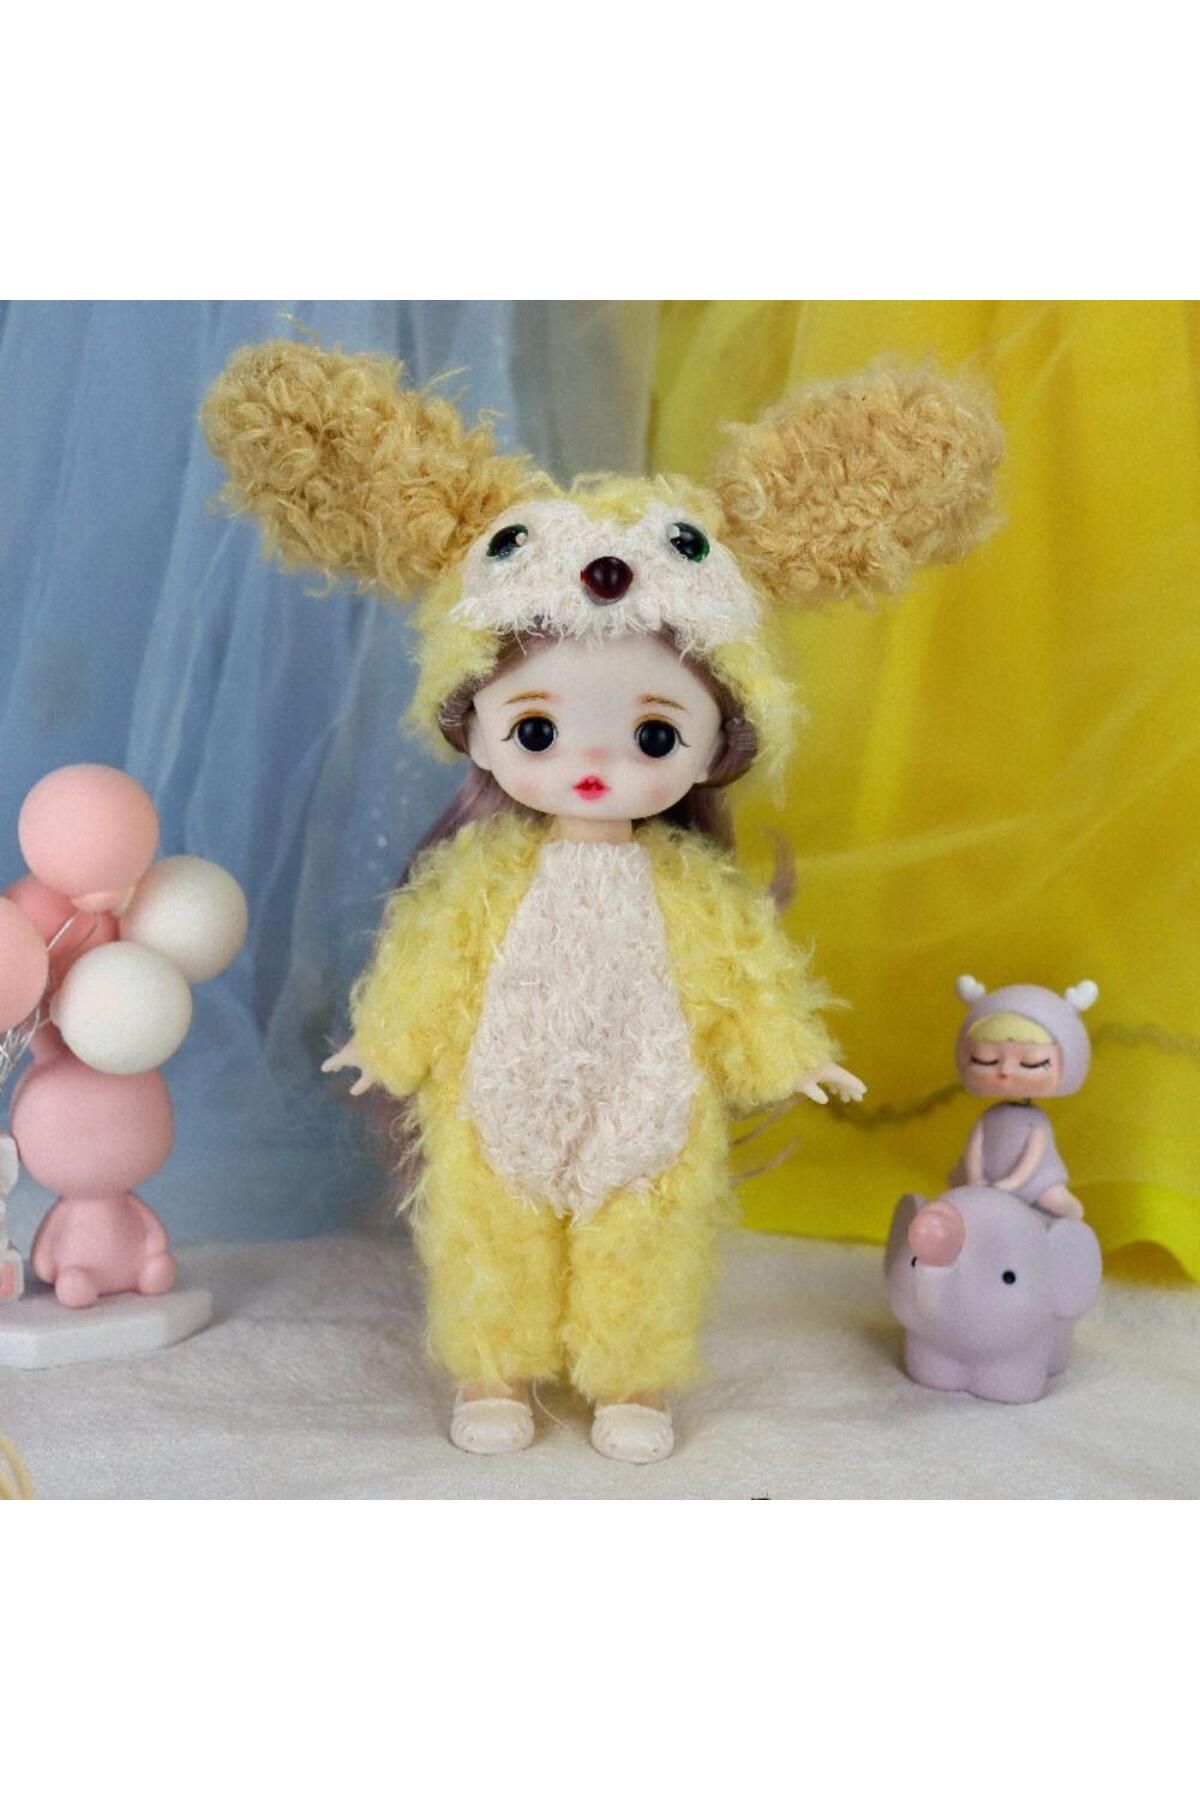 NB market oyuncak hayvan kostümlü tüm eklemleri hareket edebilen 15cm oyuncak bebek figür